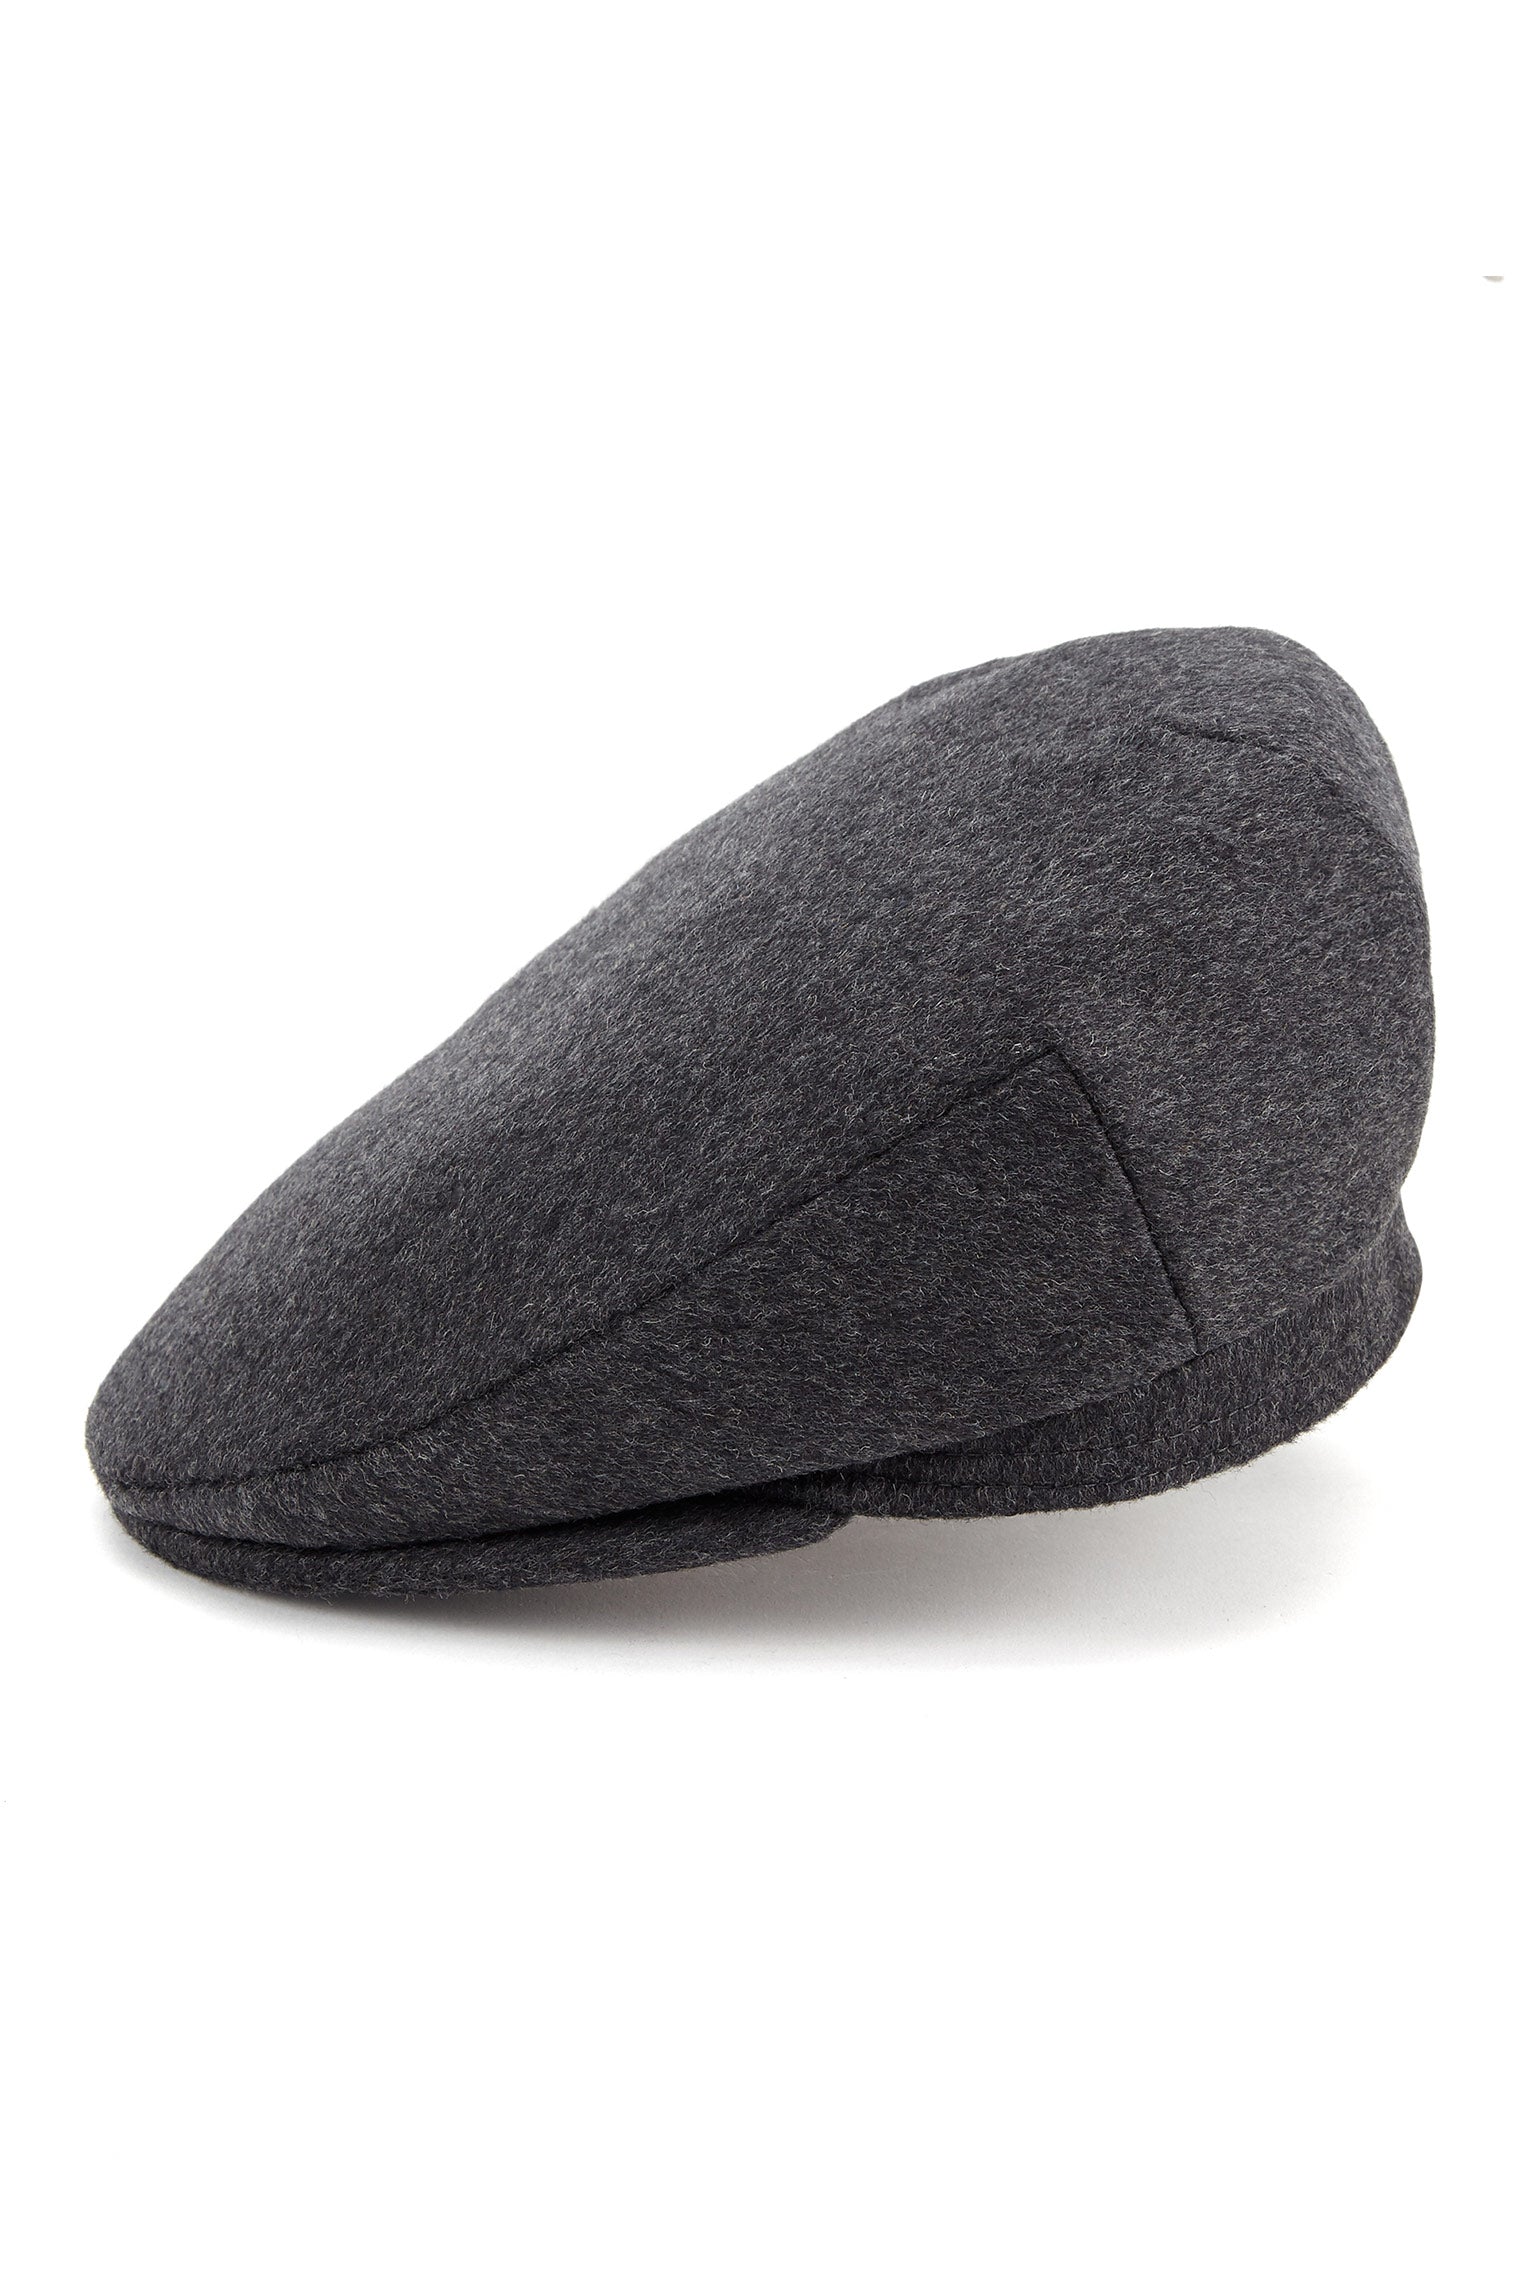 Oslo Tweed Flat Cap - Men's Hats - Lock & Co. Hatters London UK